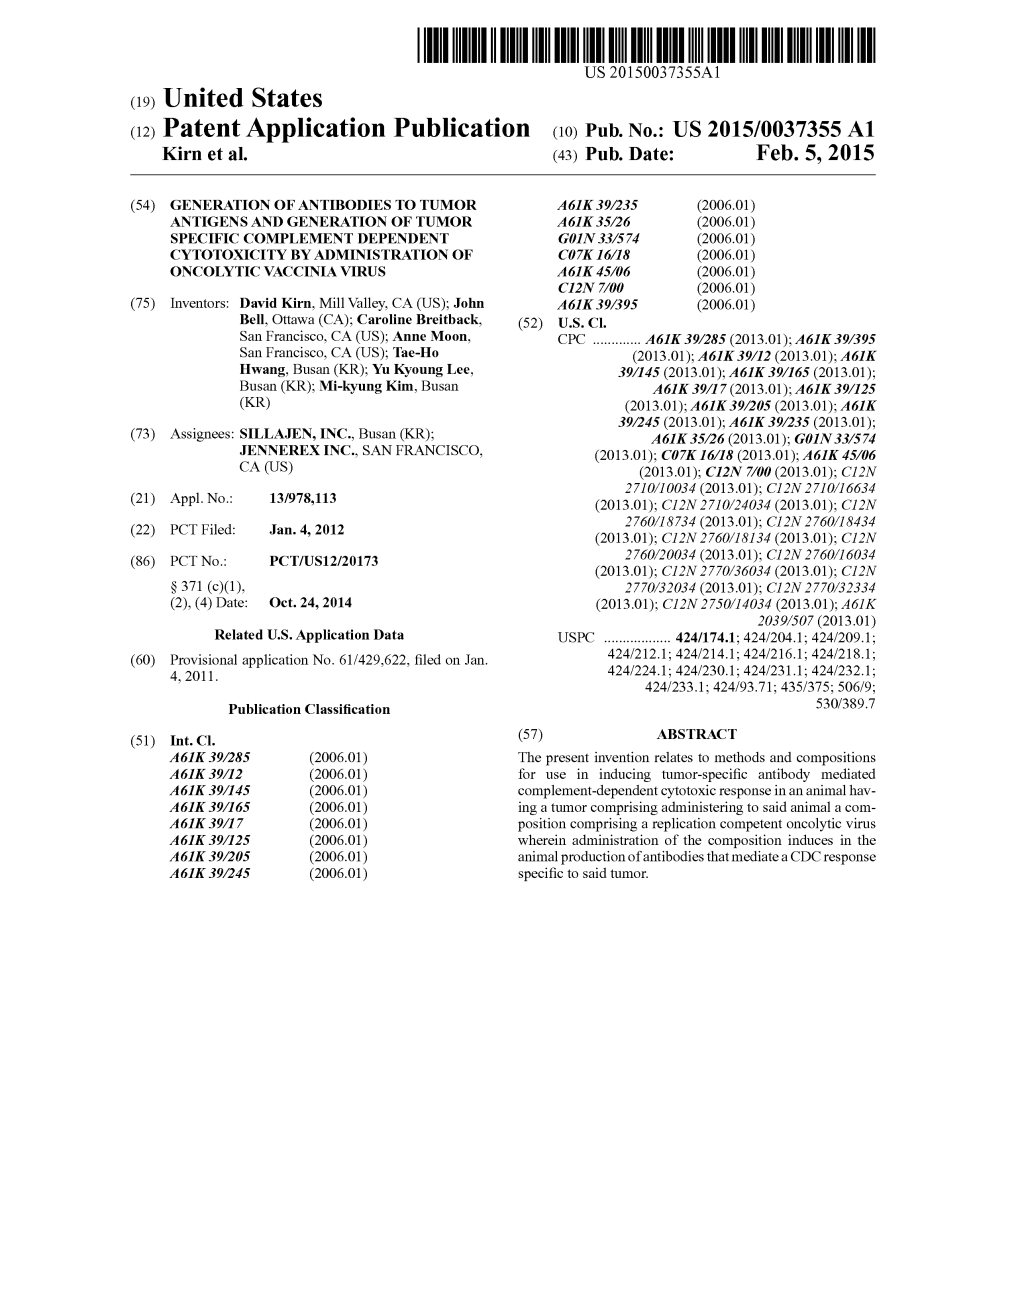 (12) Patent Application Publication (10) Pub. No.: US 2015/0037355A1 Kirn Et Al